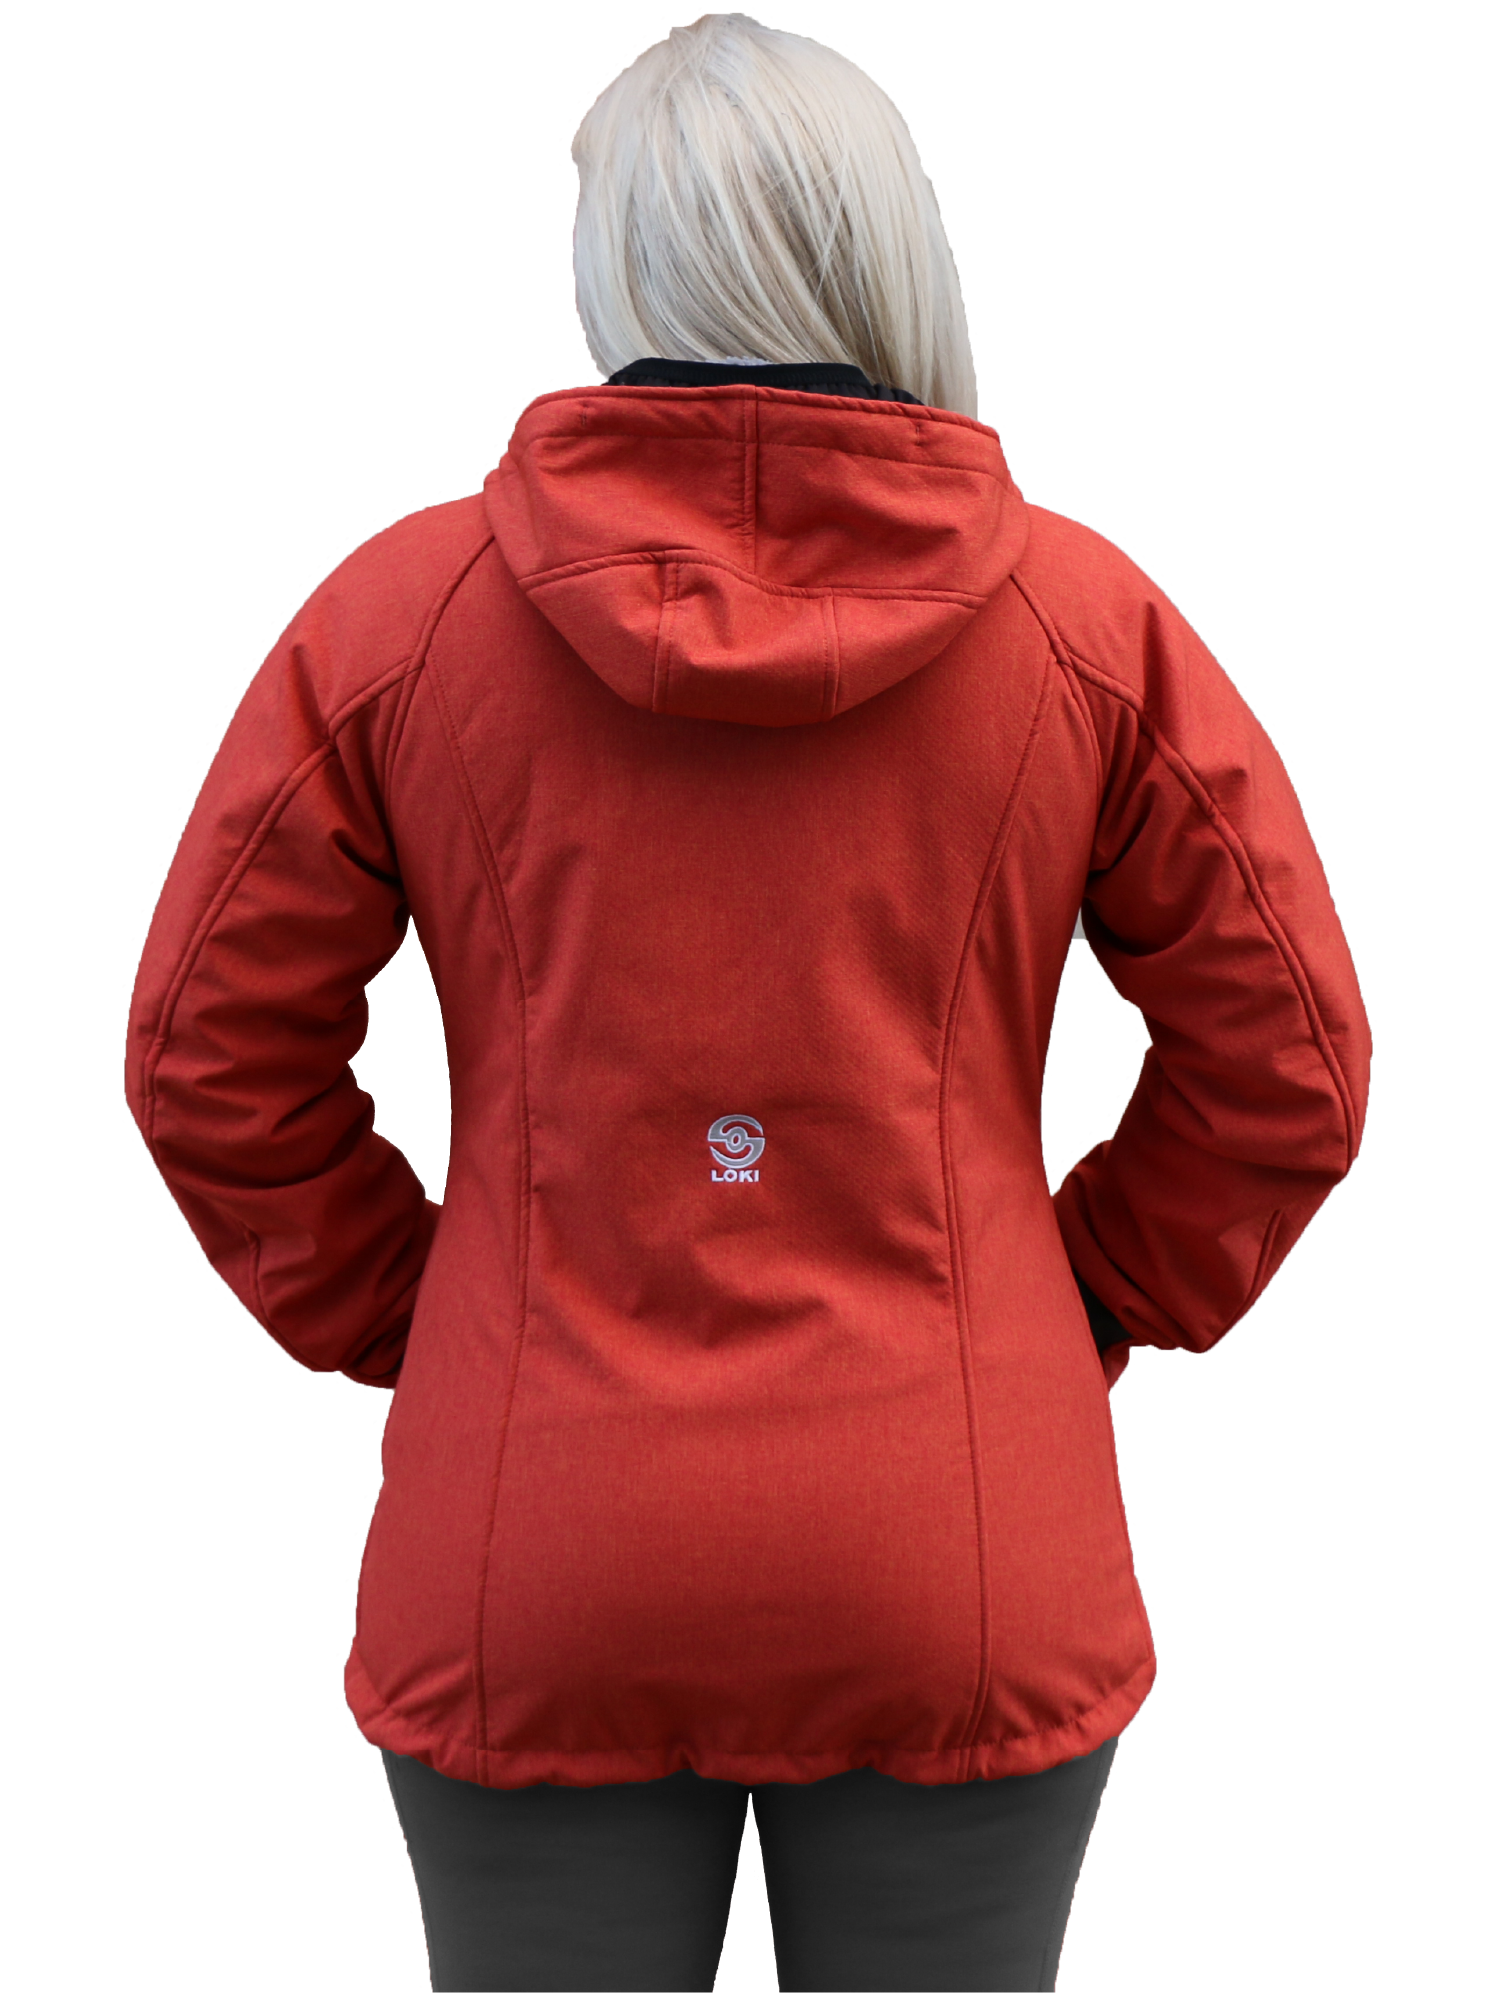 Women's Mountain Jacket - Orange Shag (Back)